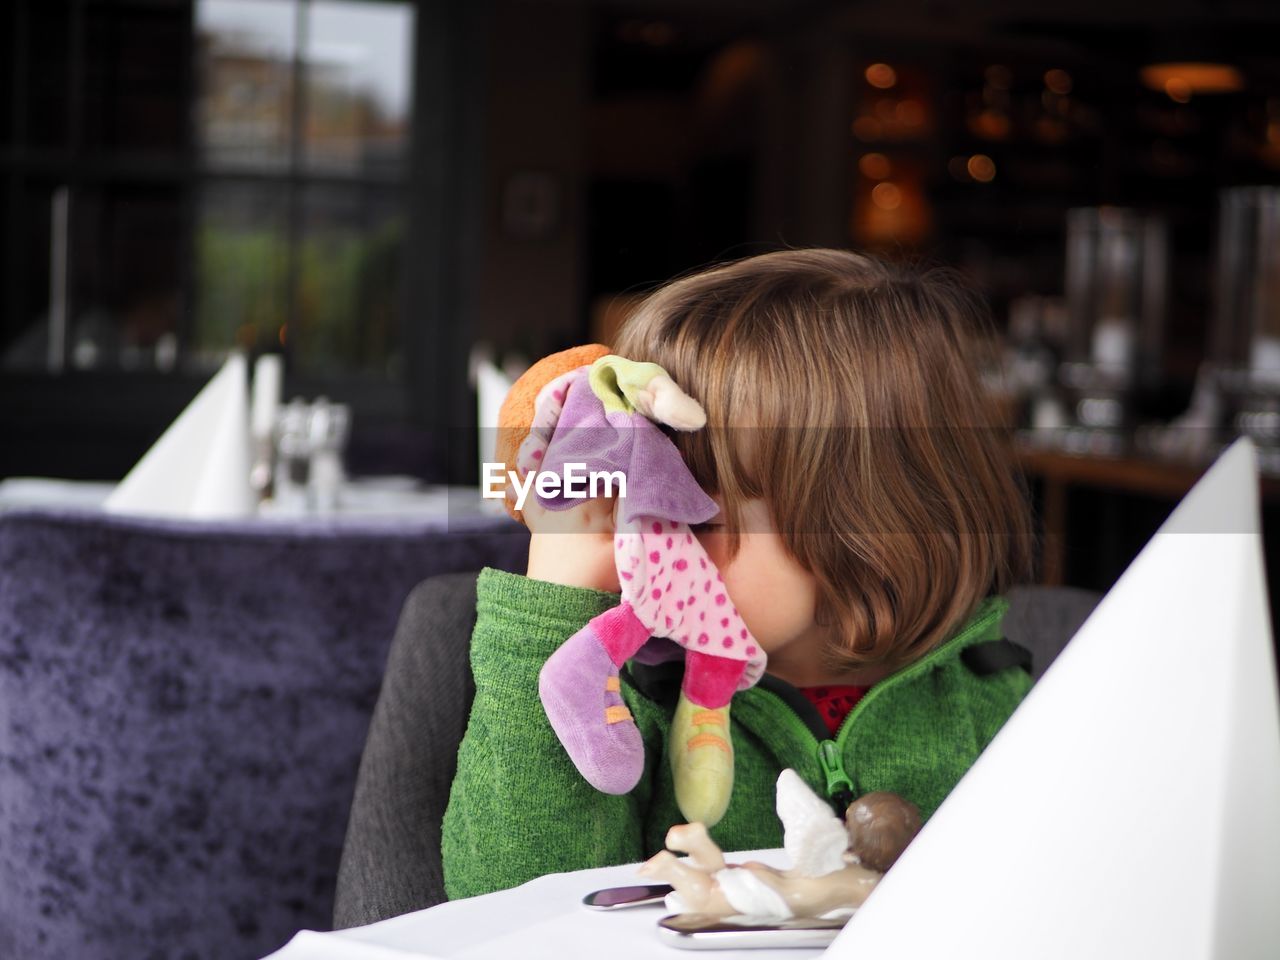 Girl holding doll at restaurant